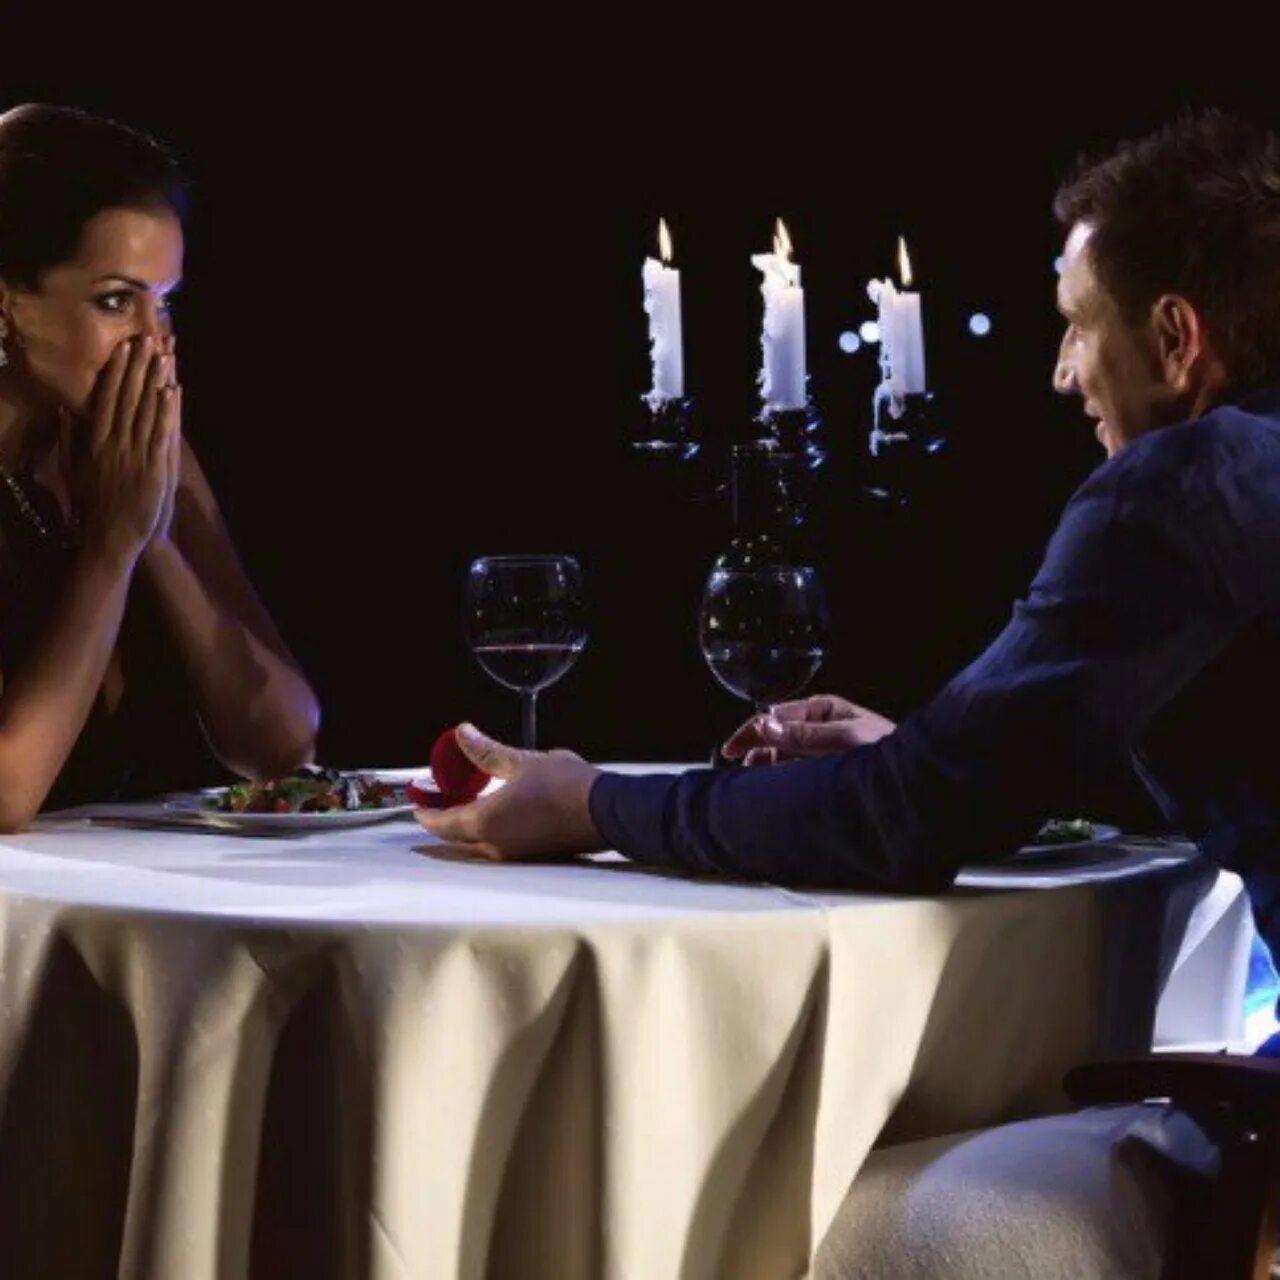 Пара в кафе за столиком. Мужчина с девушкой в ресторане. Мужчина за столом в ресторане. Романтический ужин при свечах. Предлагаю поужинать